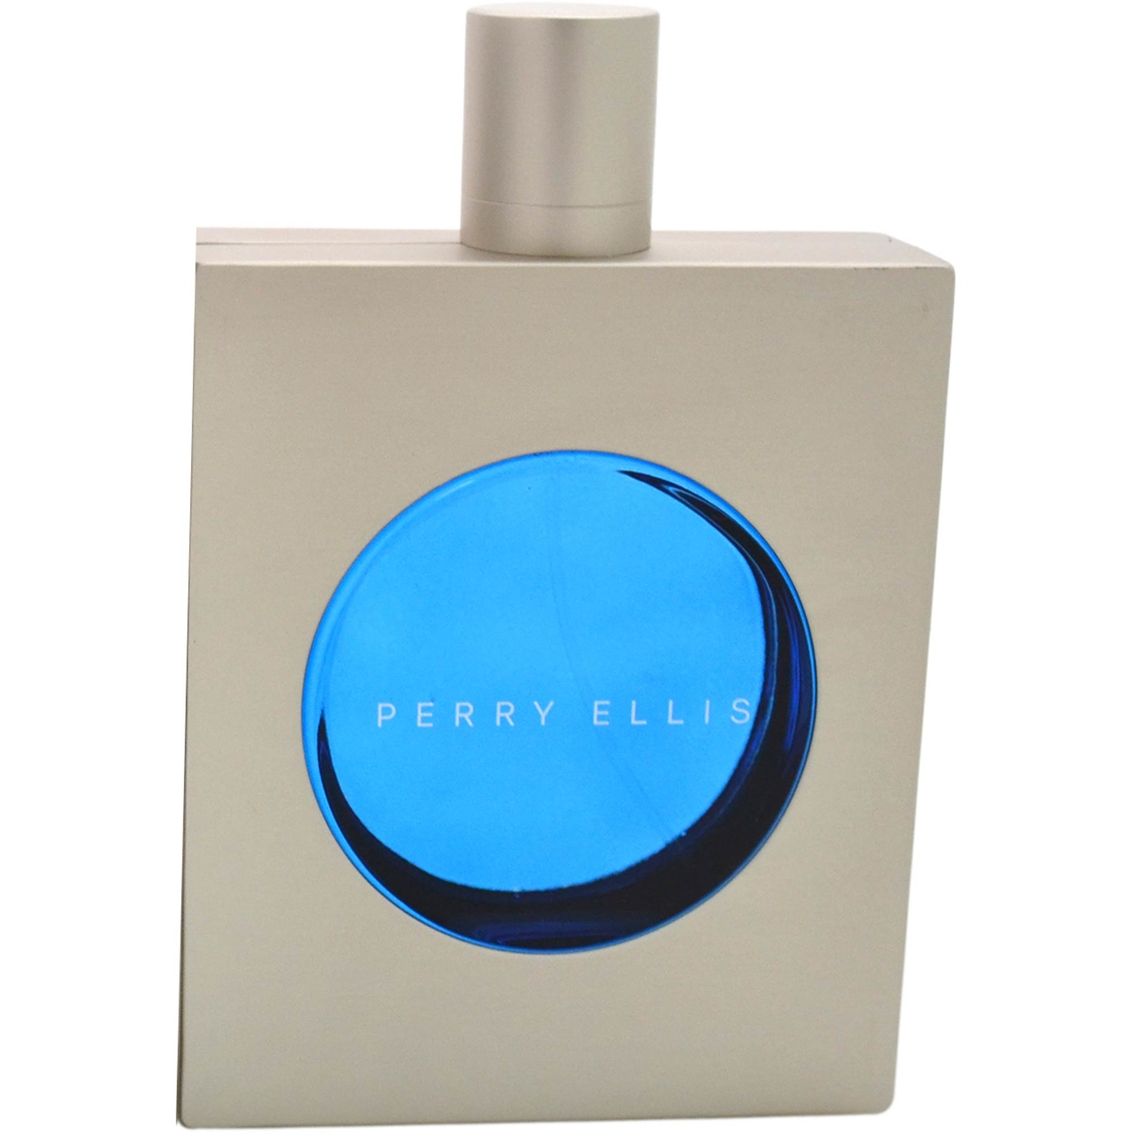 Perry Ellis Cobalt Eau de Toilette Spray